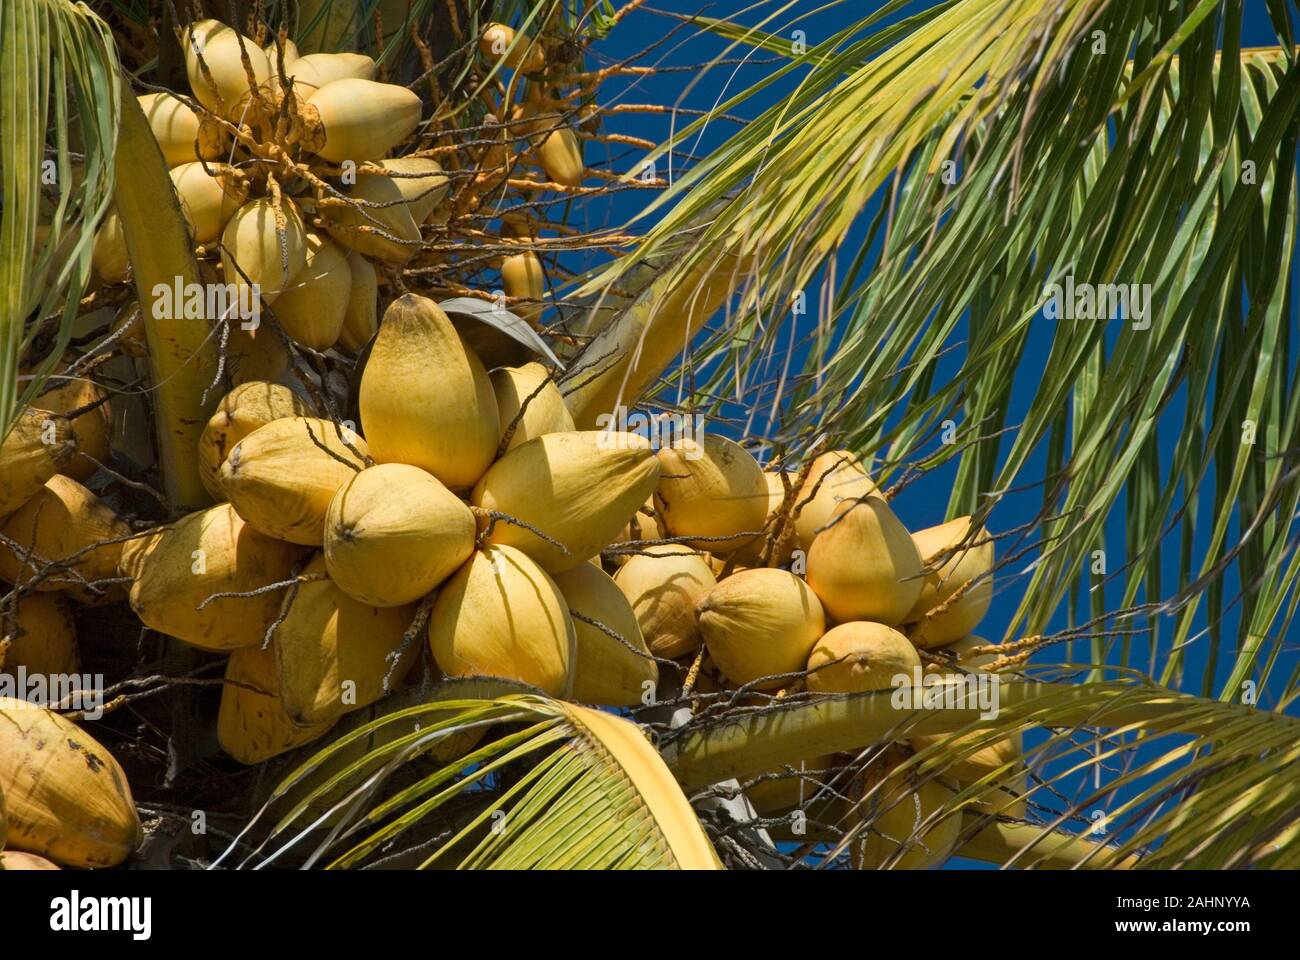 Kuba, Karibik, Kokospalme, Cocos nucifera, Kokosnuesse Stock Photo